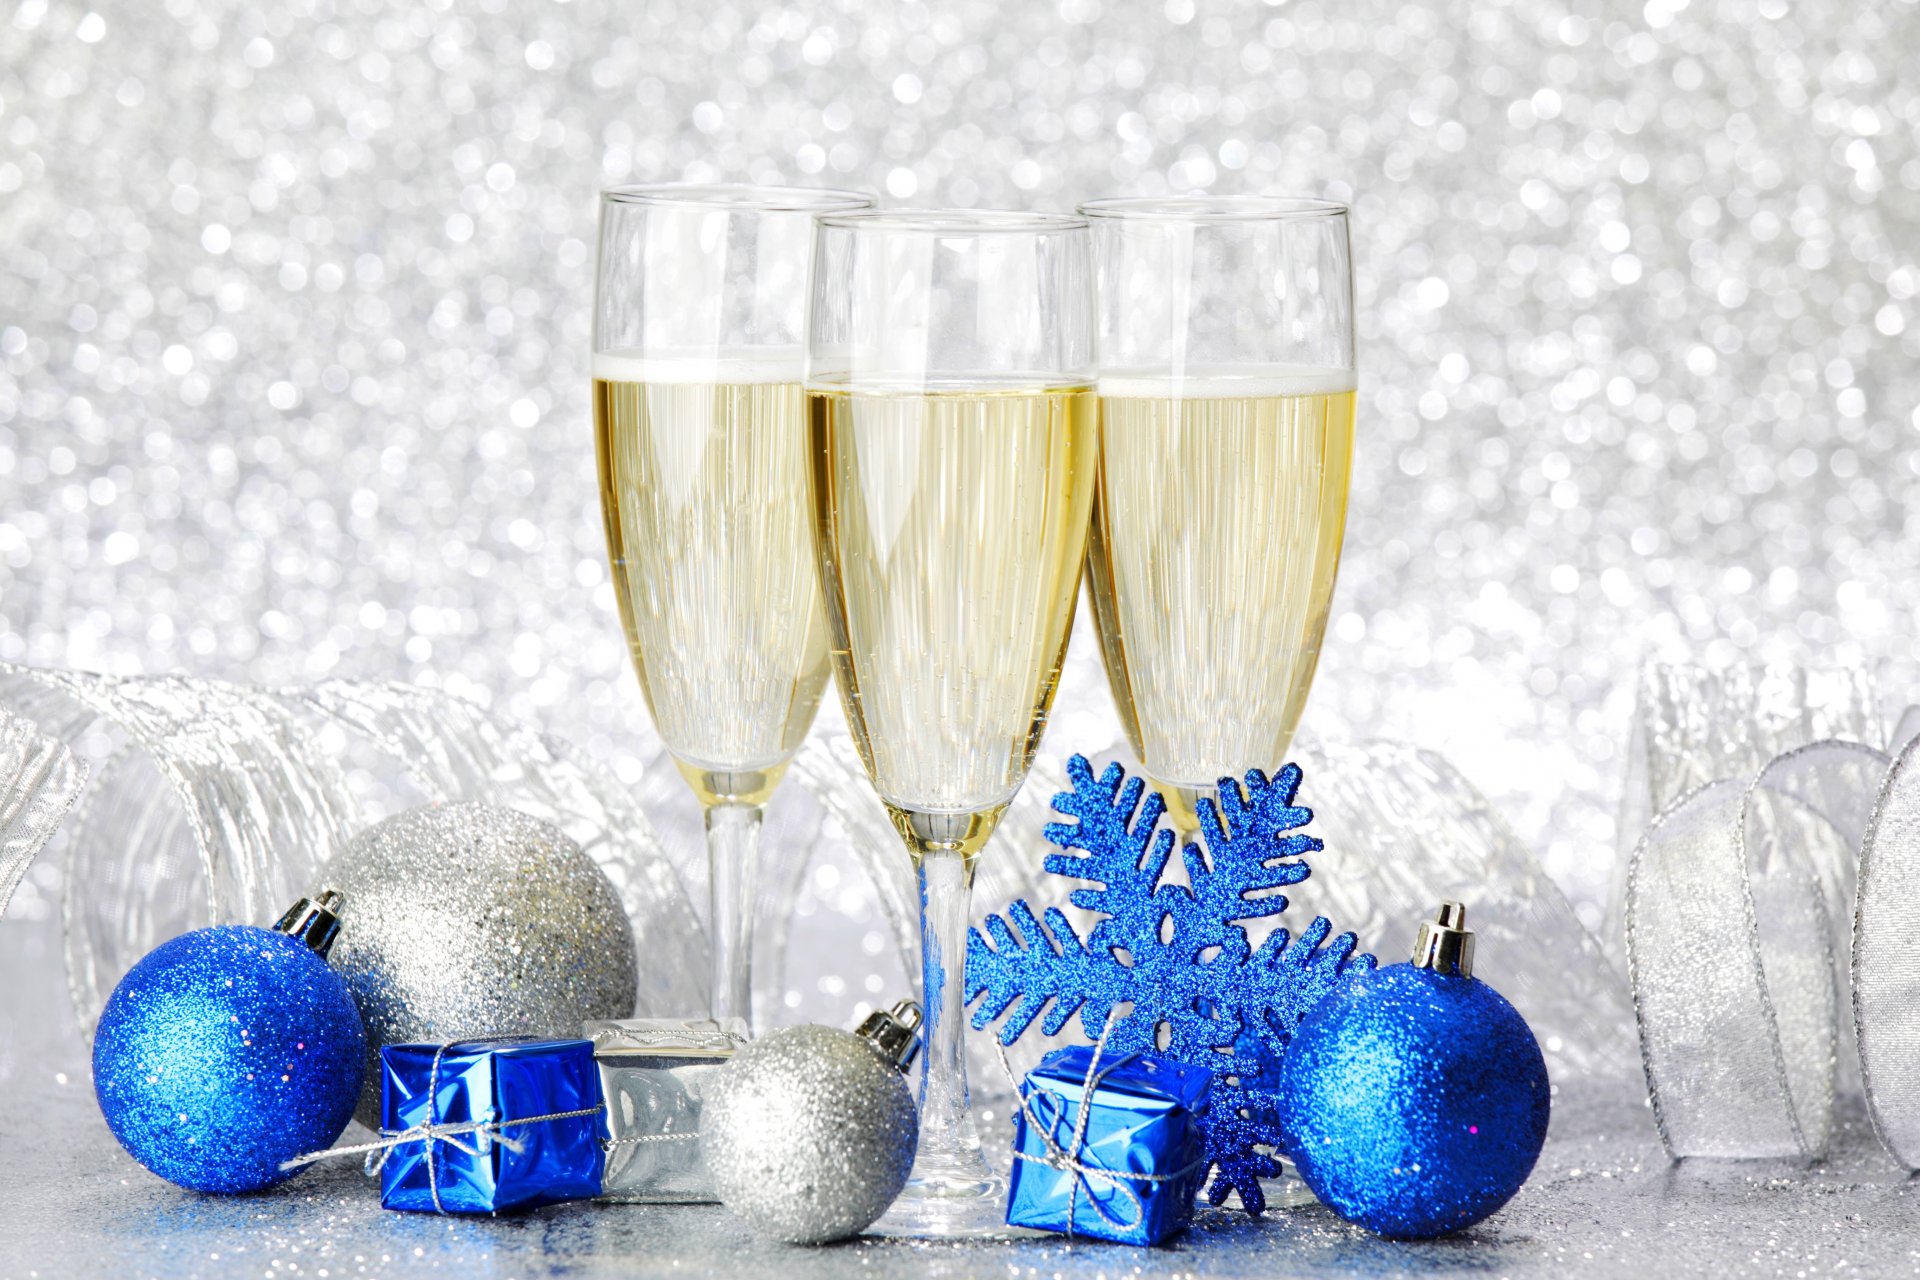 geschenke kugeln schneeflocke champagner gläser urlaub frohes neues jahr frohe weihnachten dekoration winter schnee urlaub weihnachten winter tassen